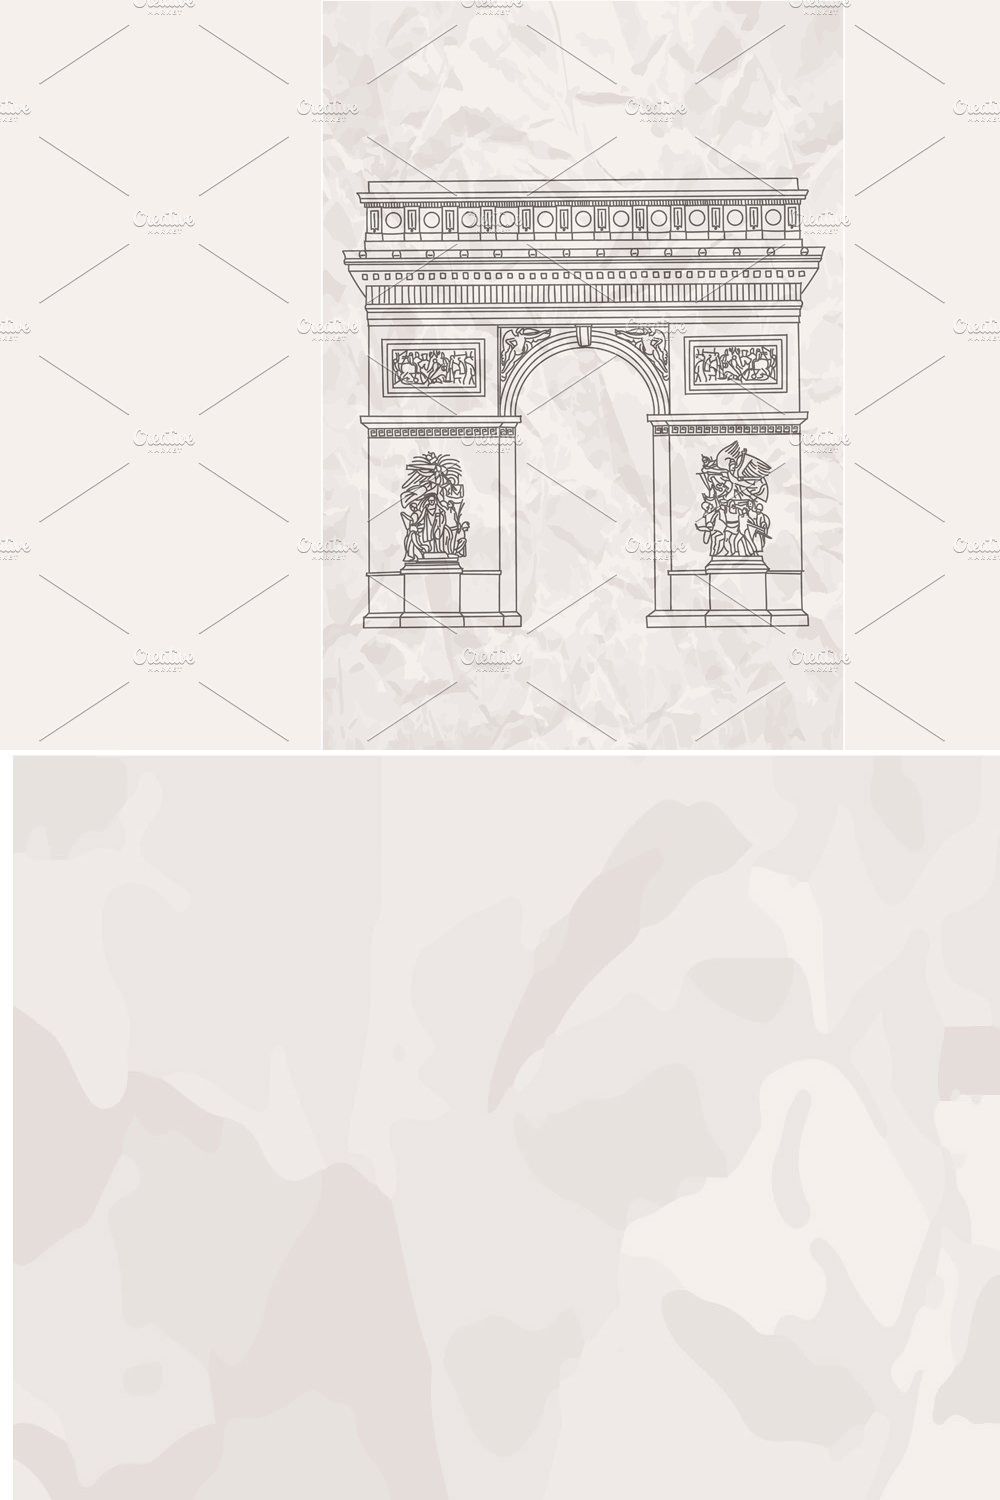 Arc De Triomphe in Paris Vector pinterest preview image.